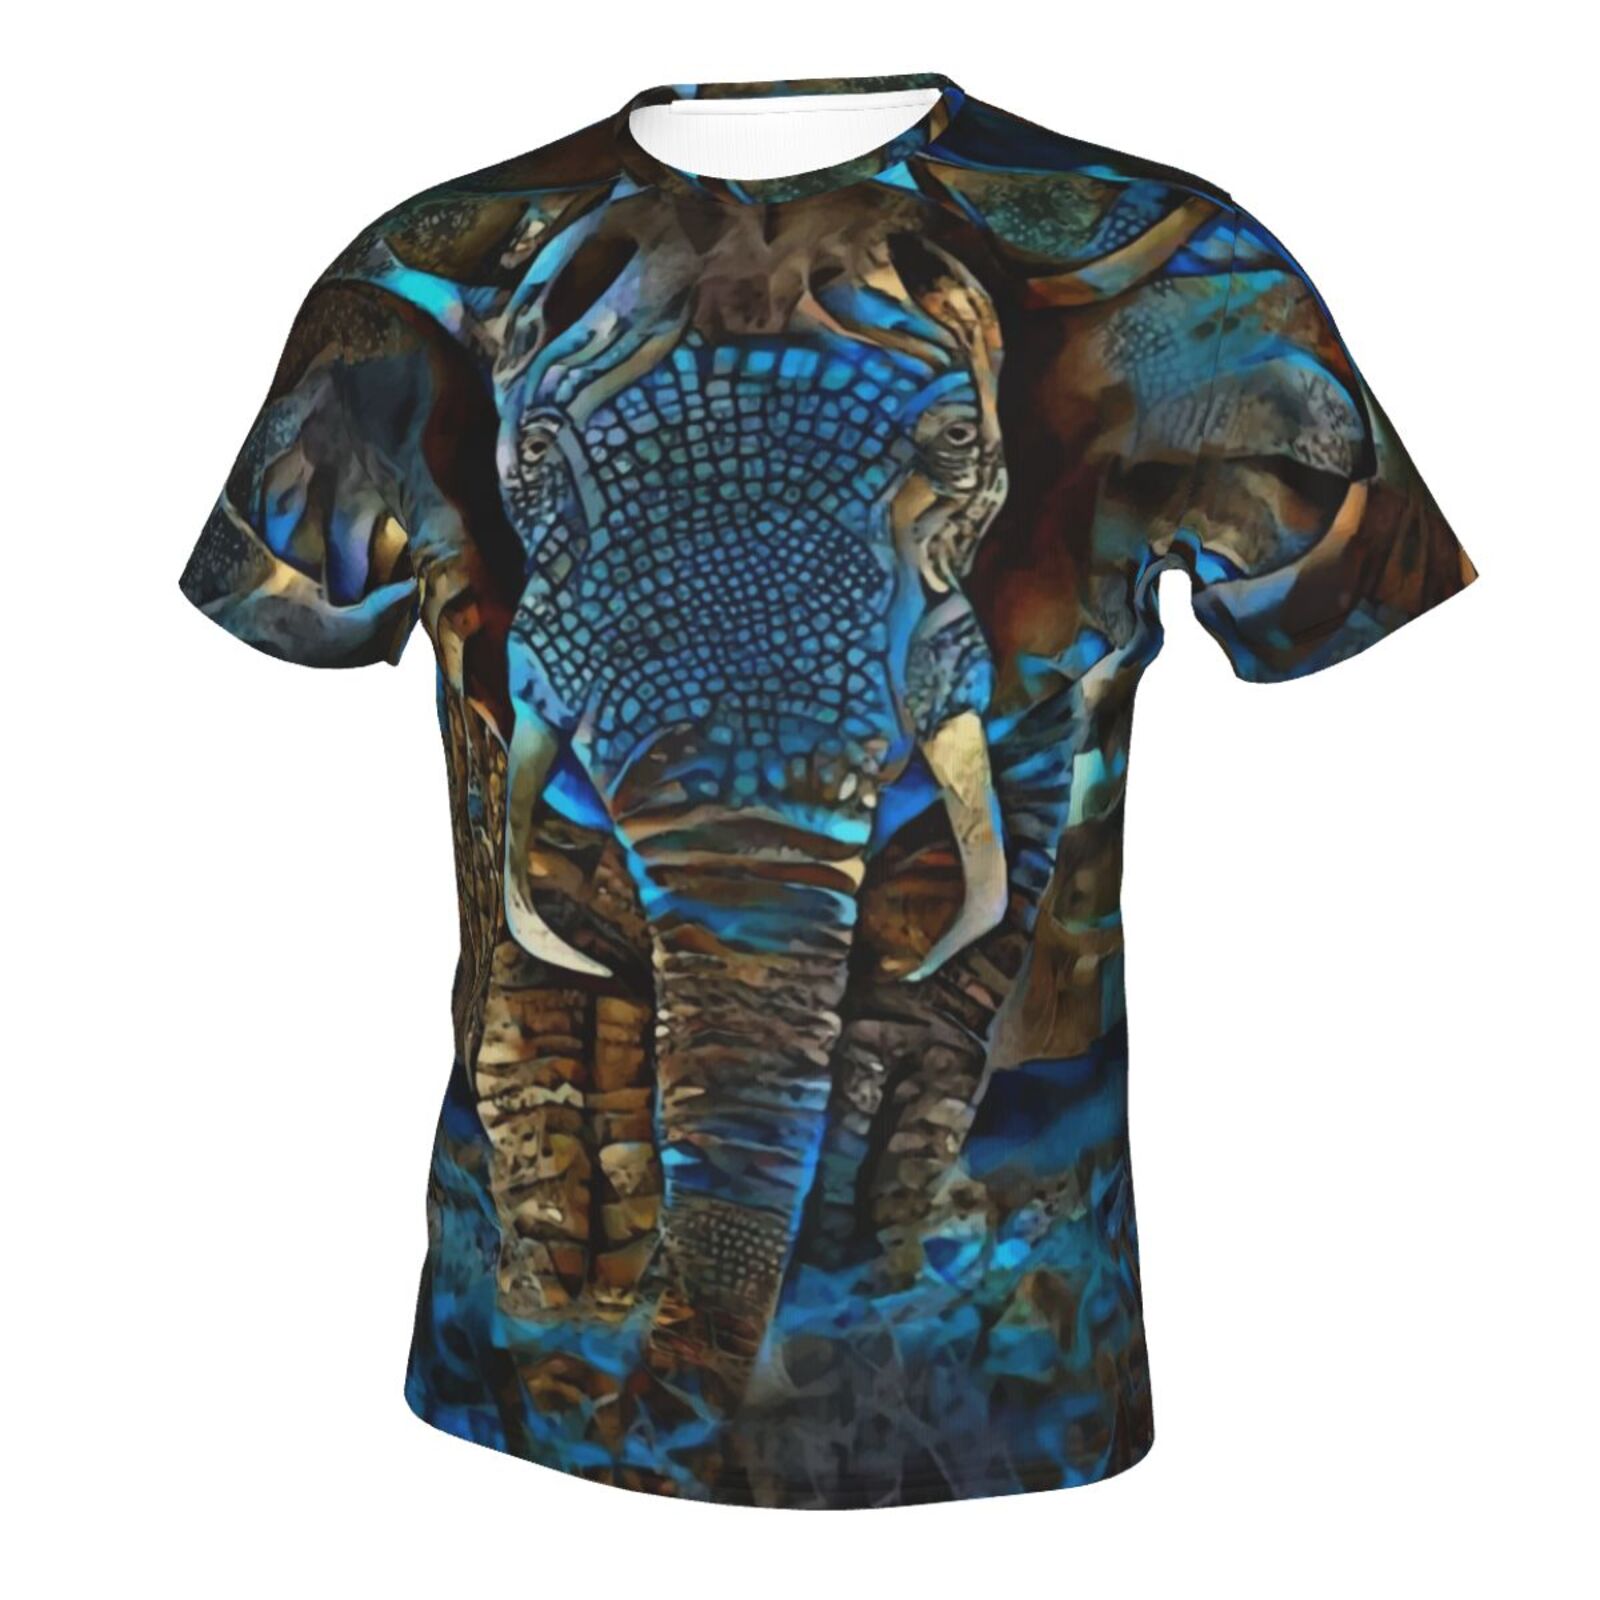 Elefant Braun Blau Medien Mischen Elemente Klassisch Österreich T-shirt